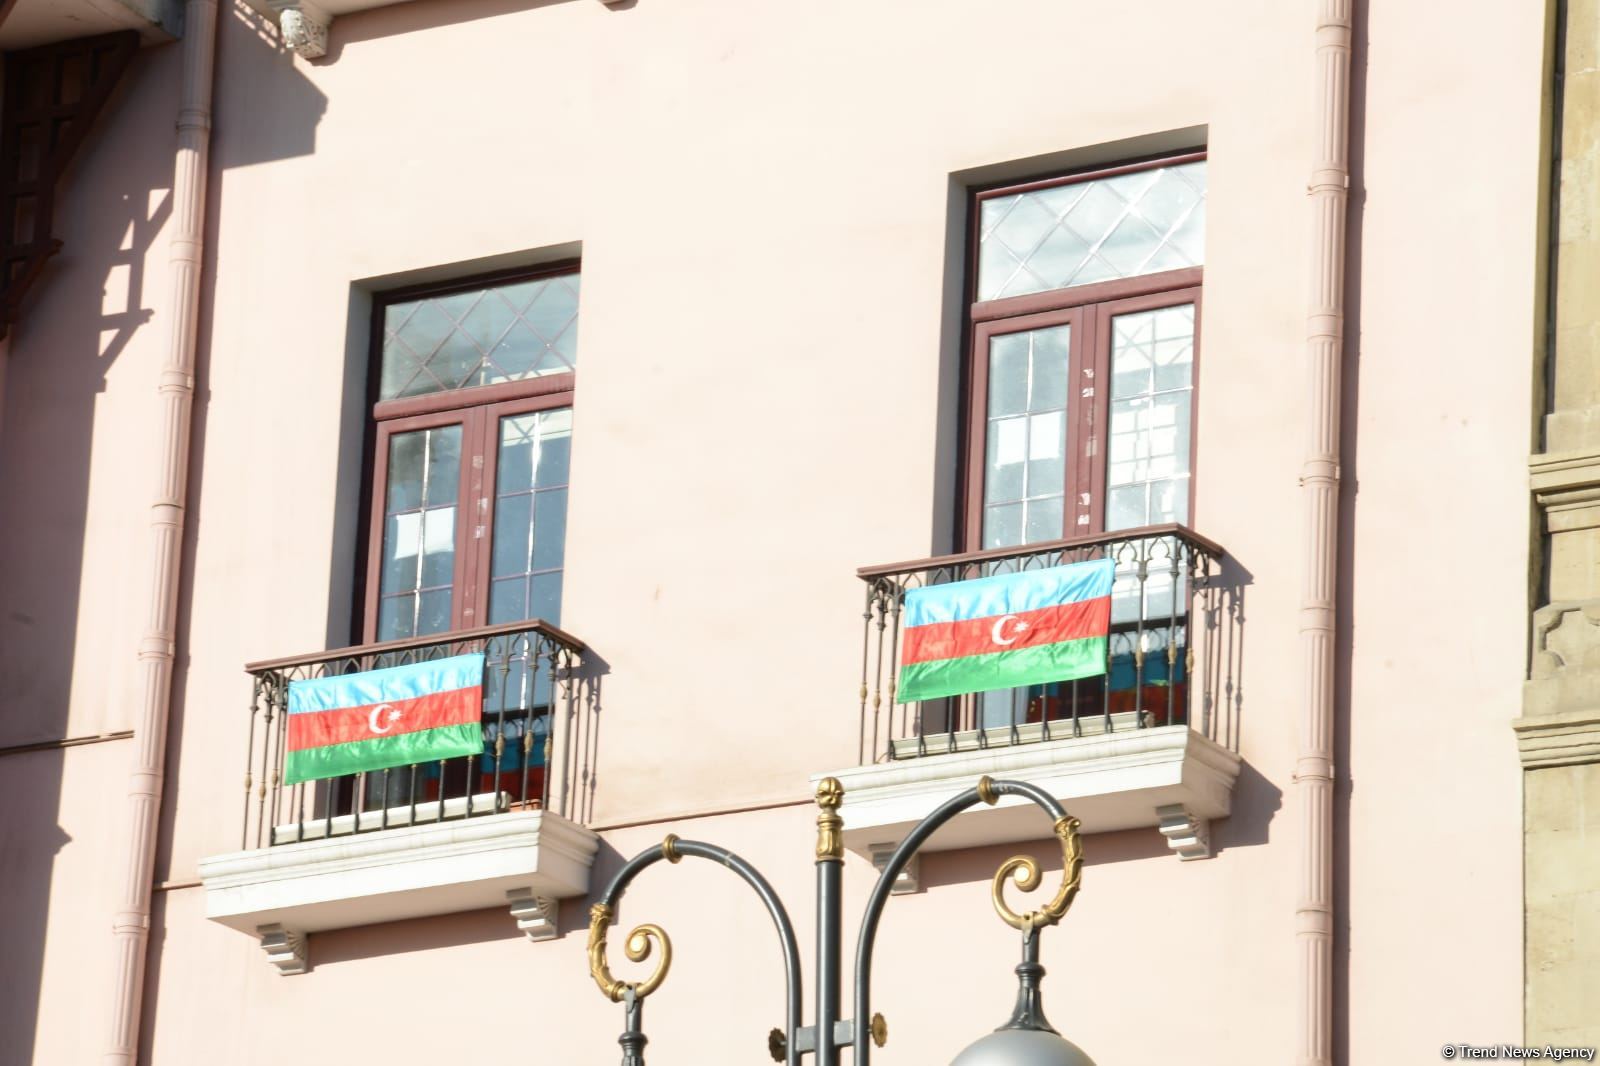 Улицы и проспекты Баку в День памяти украшены азербайджанскими флагами (ФОТО)